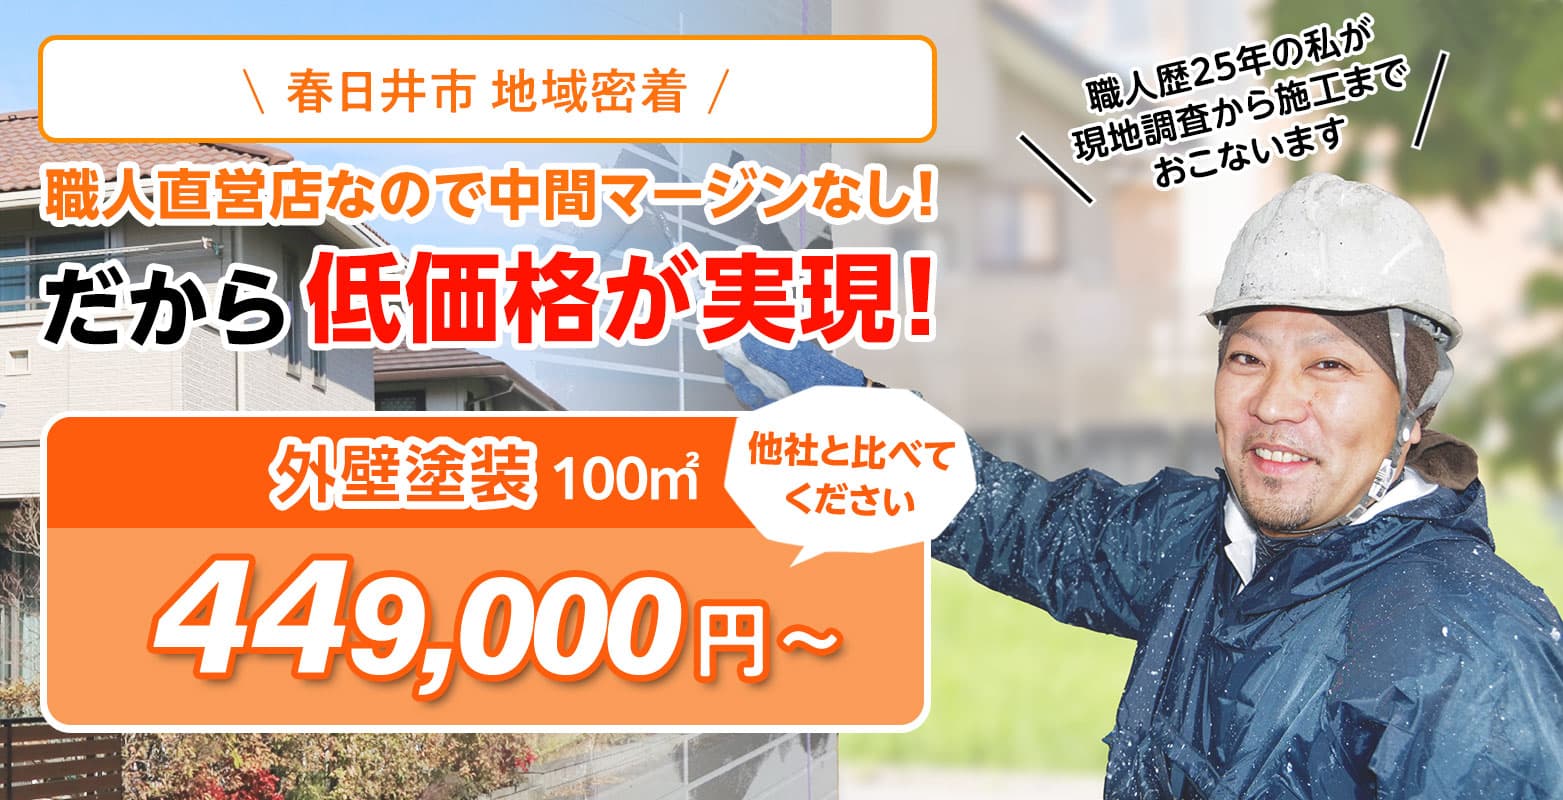 愛知県春日井市の外壁塗装・屋根塗装は『ハウストゥカラー』へ